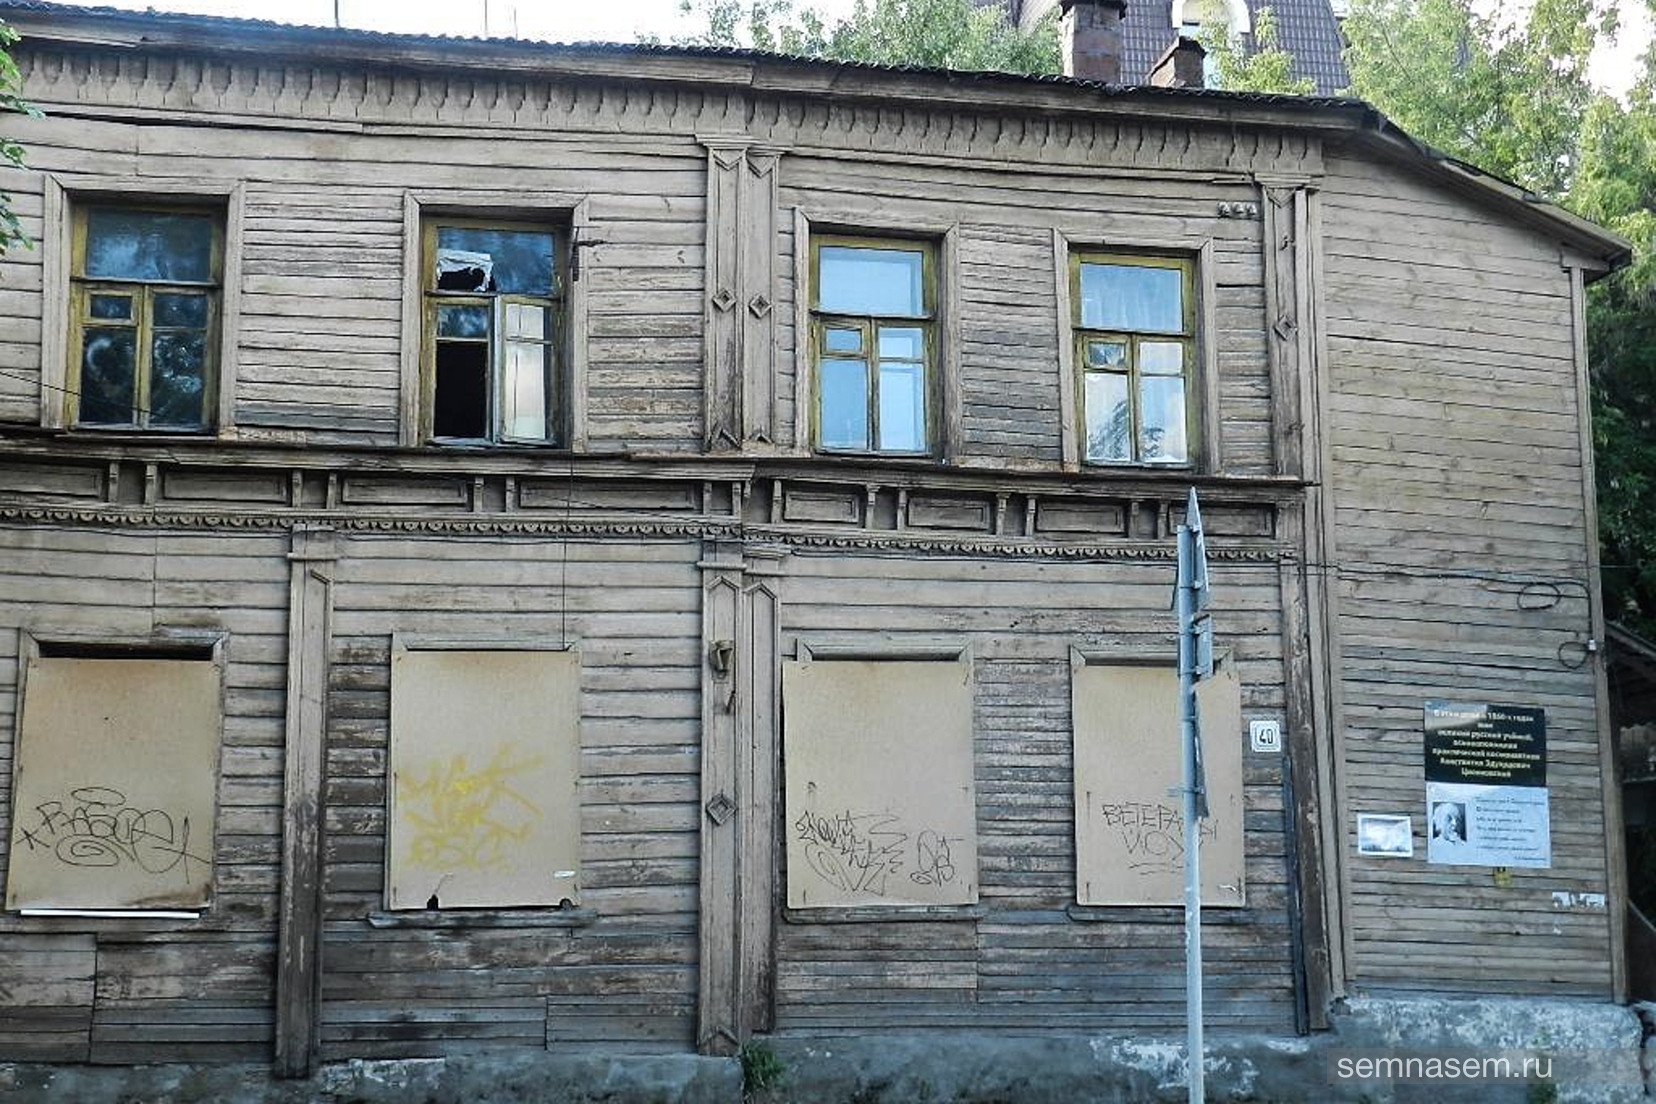 Рязанские градозащитники потребовали от мэрии расторгнуть договор с арендатором дома Циолковского. Ранее в нем поселились наркоманы